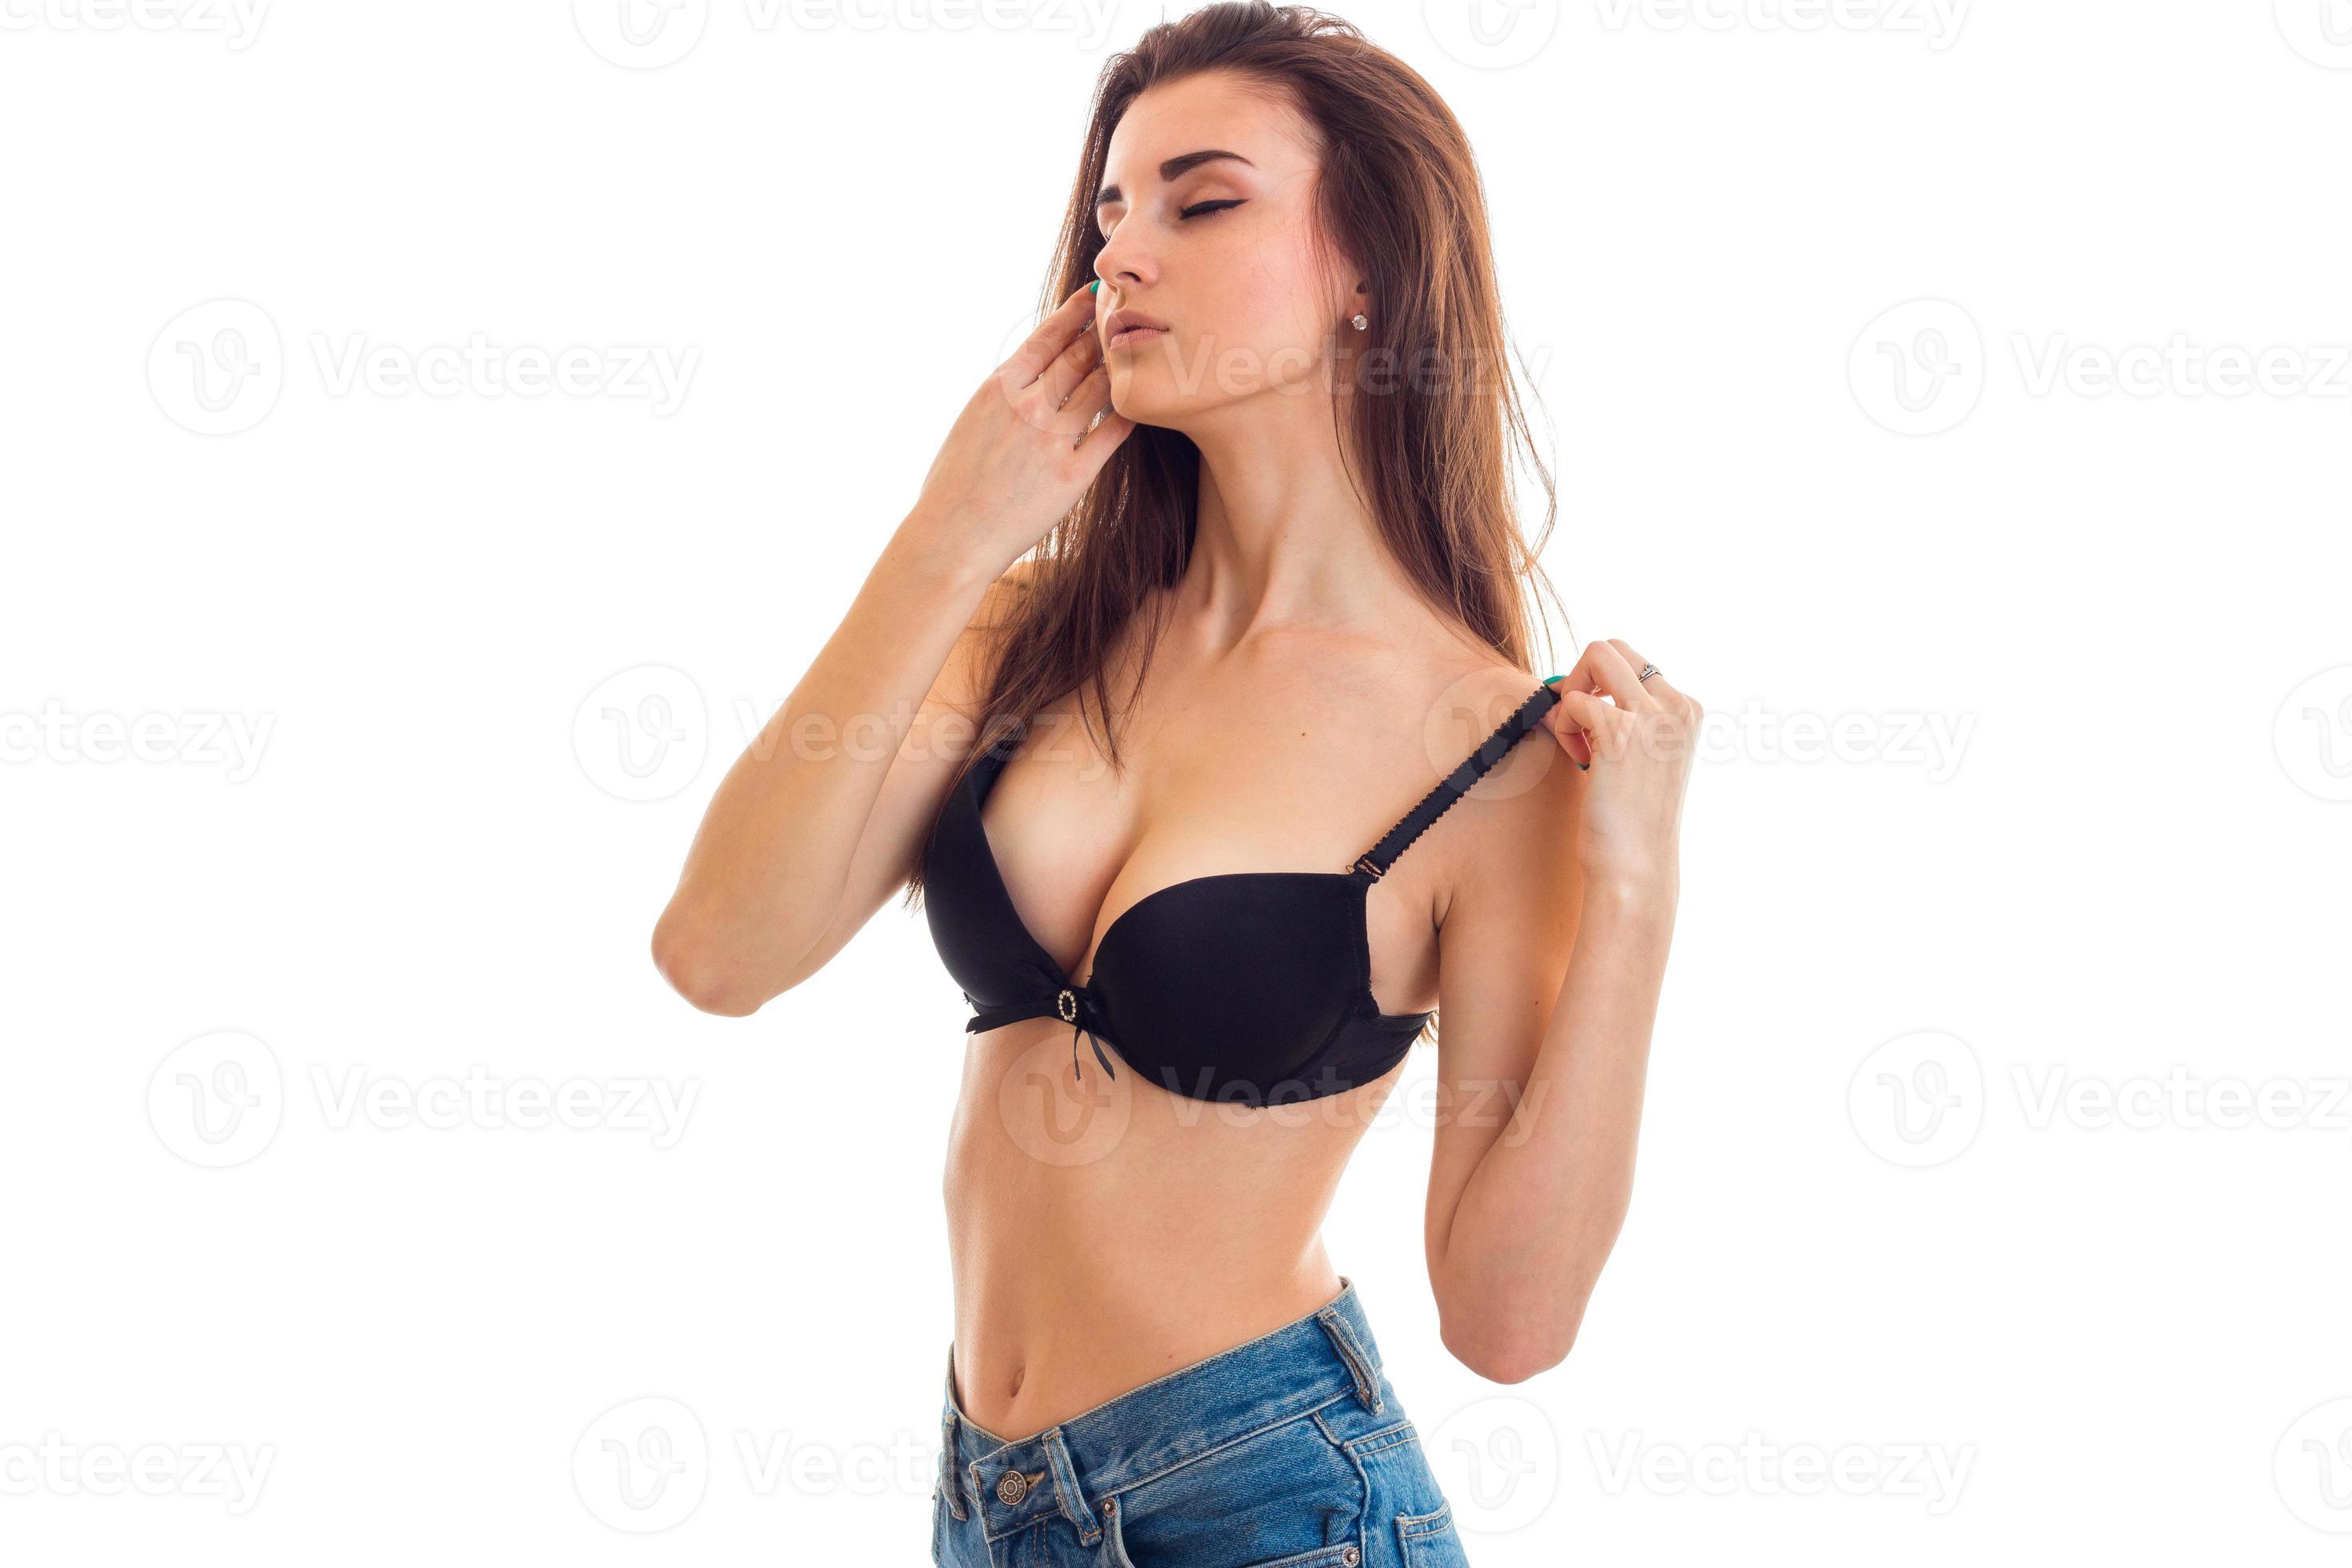 women taking of bras